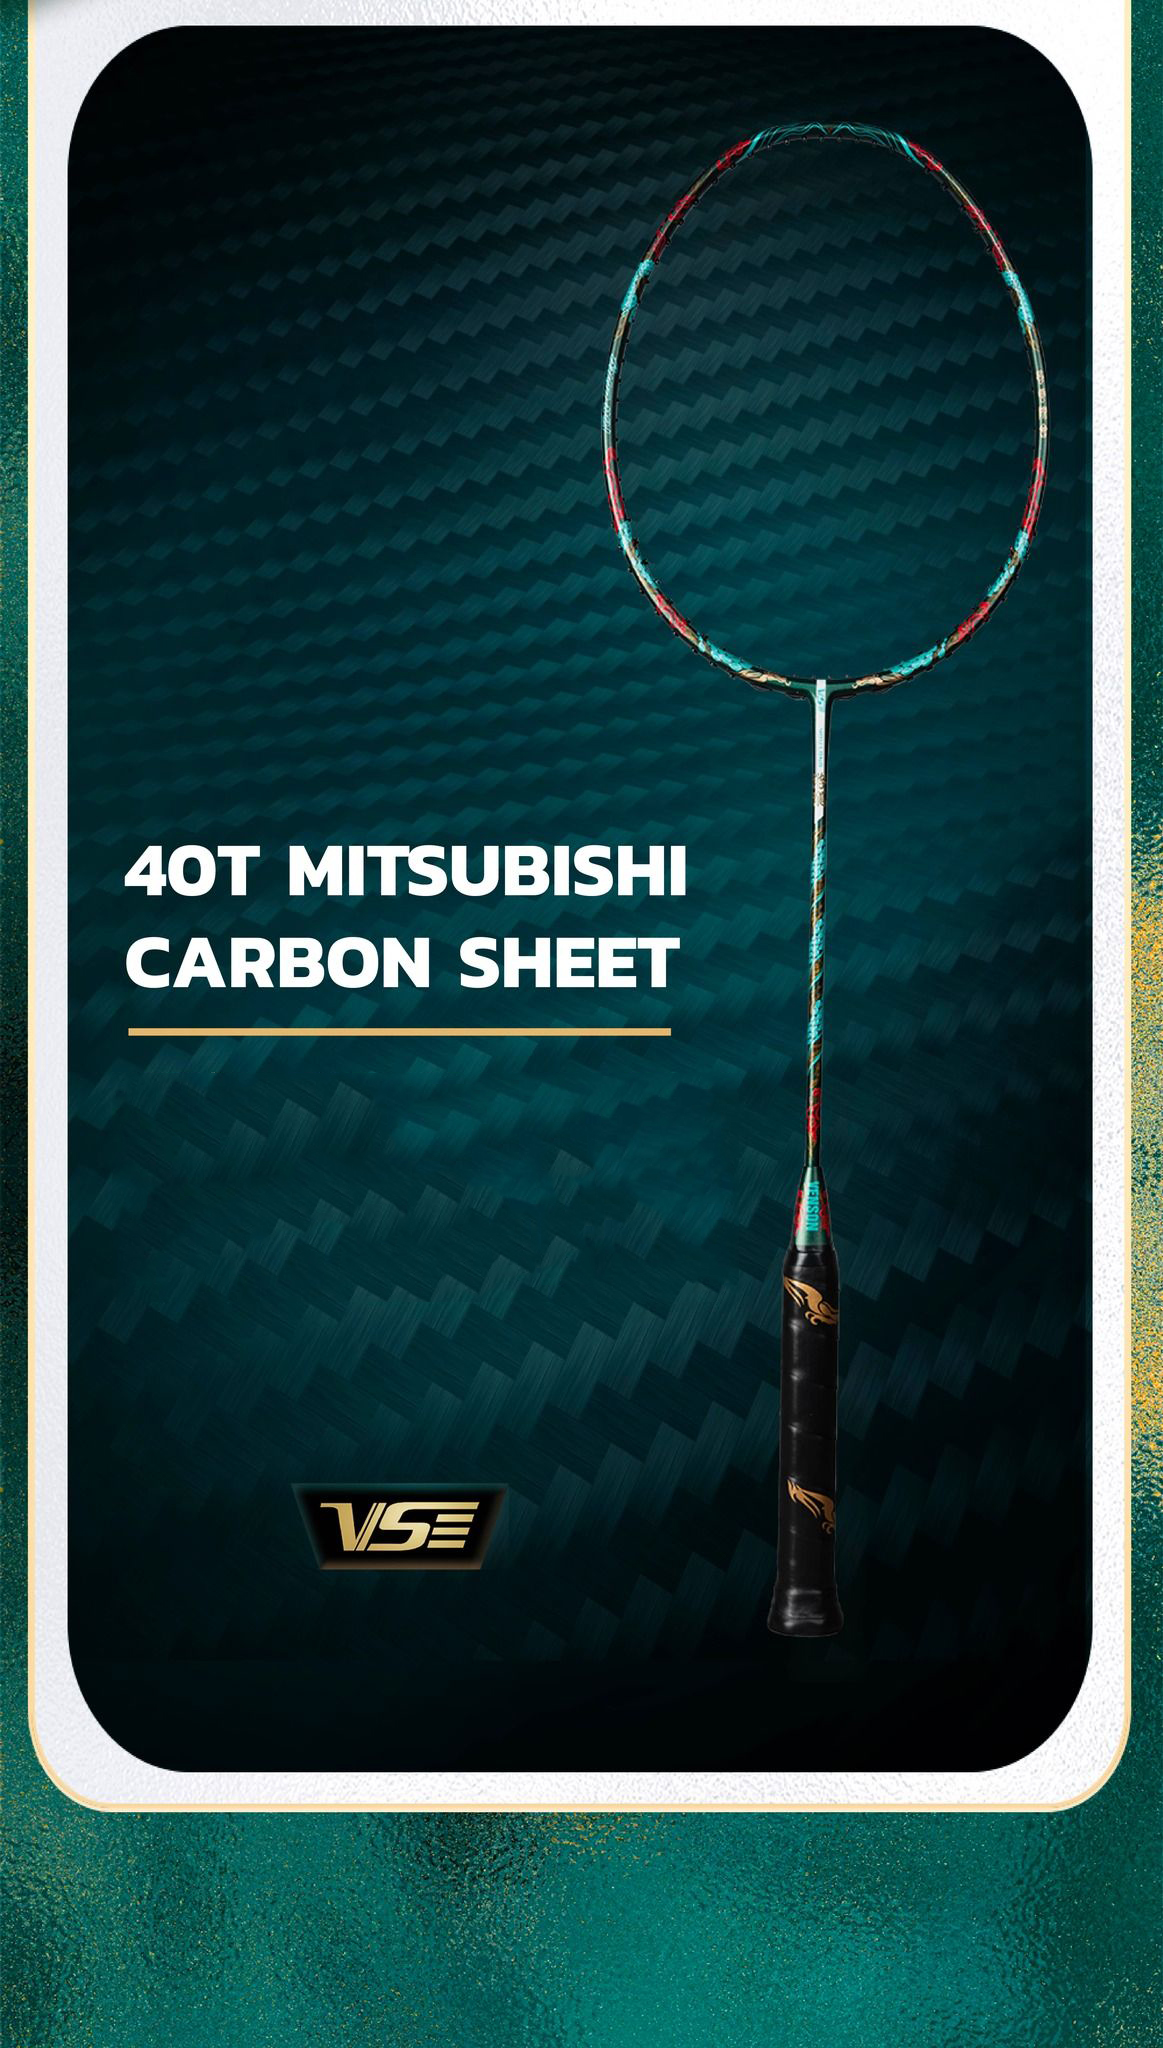 Công nghệ 40T Mitsubishi Carbon Sheet giúp Youlong bền bỉ hơn